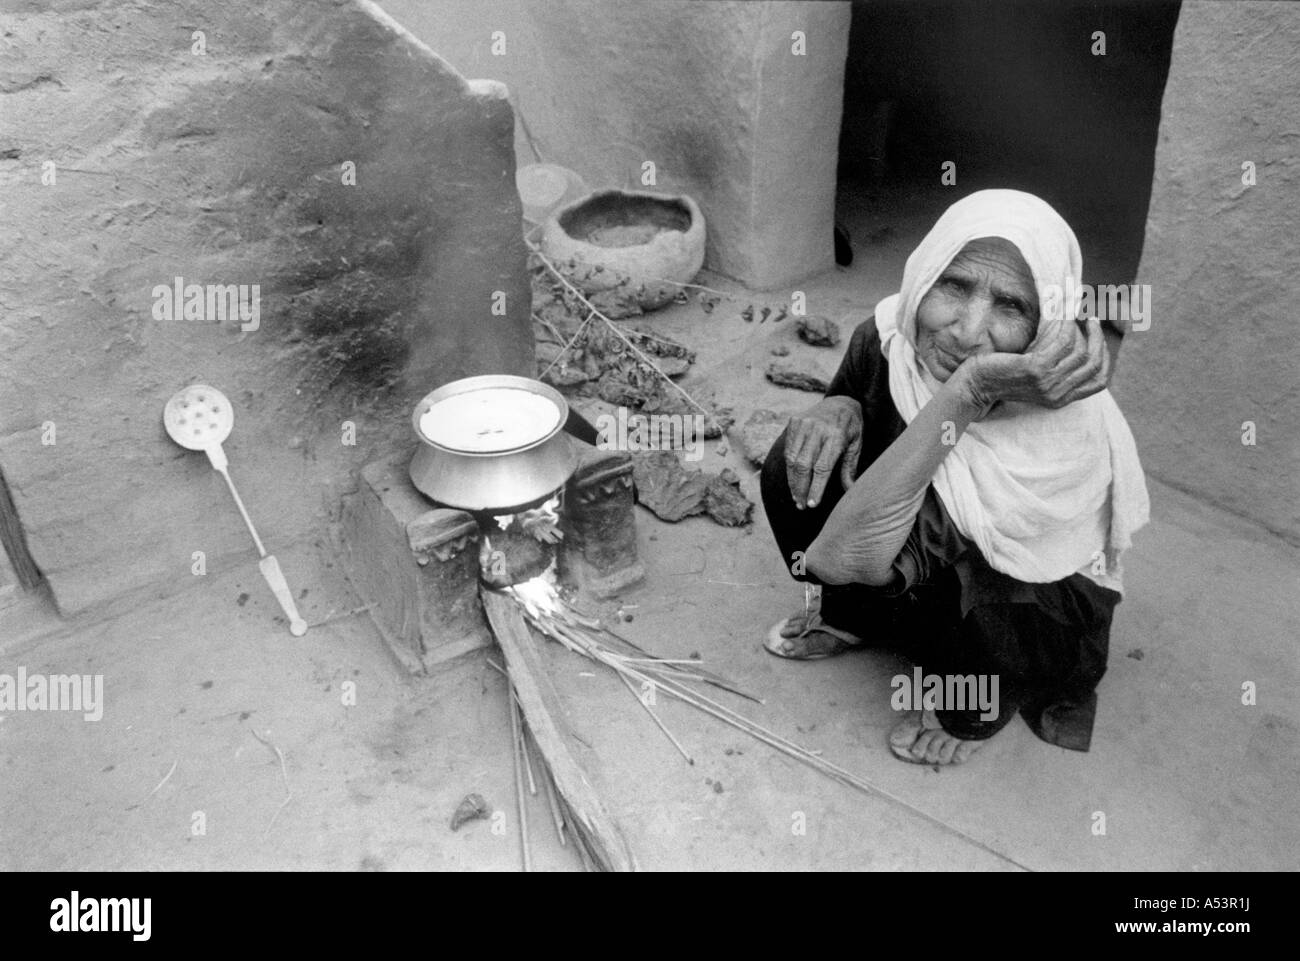 Painet ha1743 351 in bianco e nero il cibo donna vecchia cucina pakistan paese nazione in via di sviluppo meno sviluppati dal punto di vista economico Foto Stock